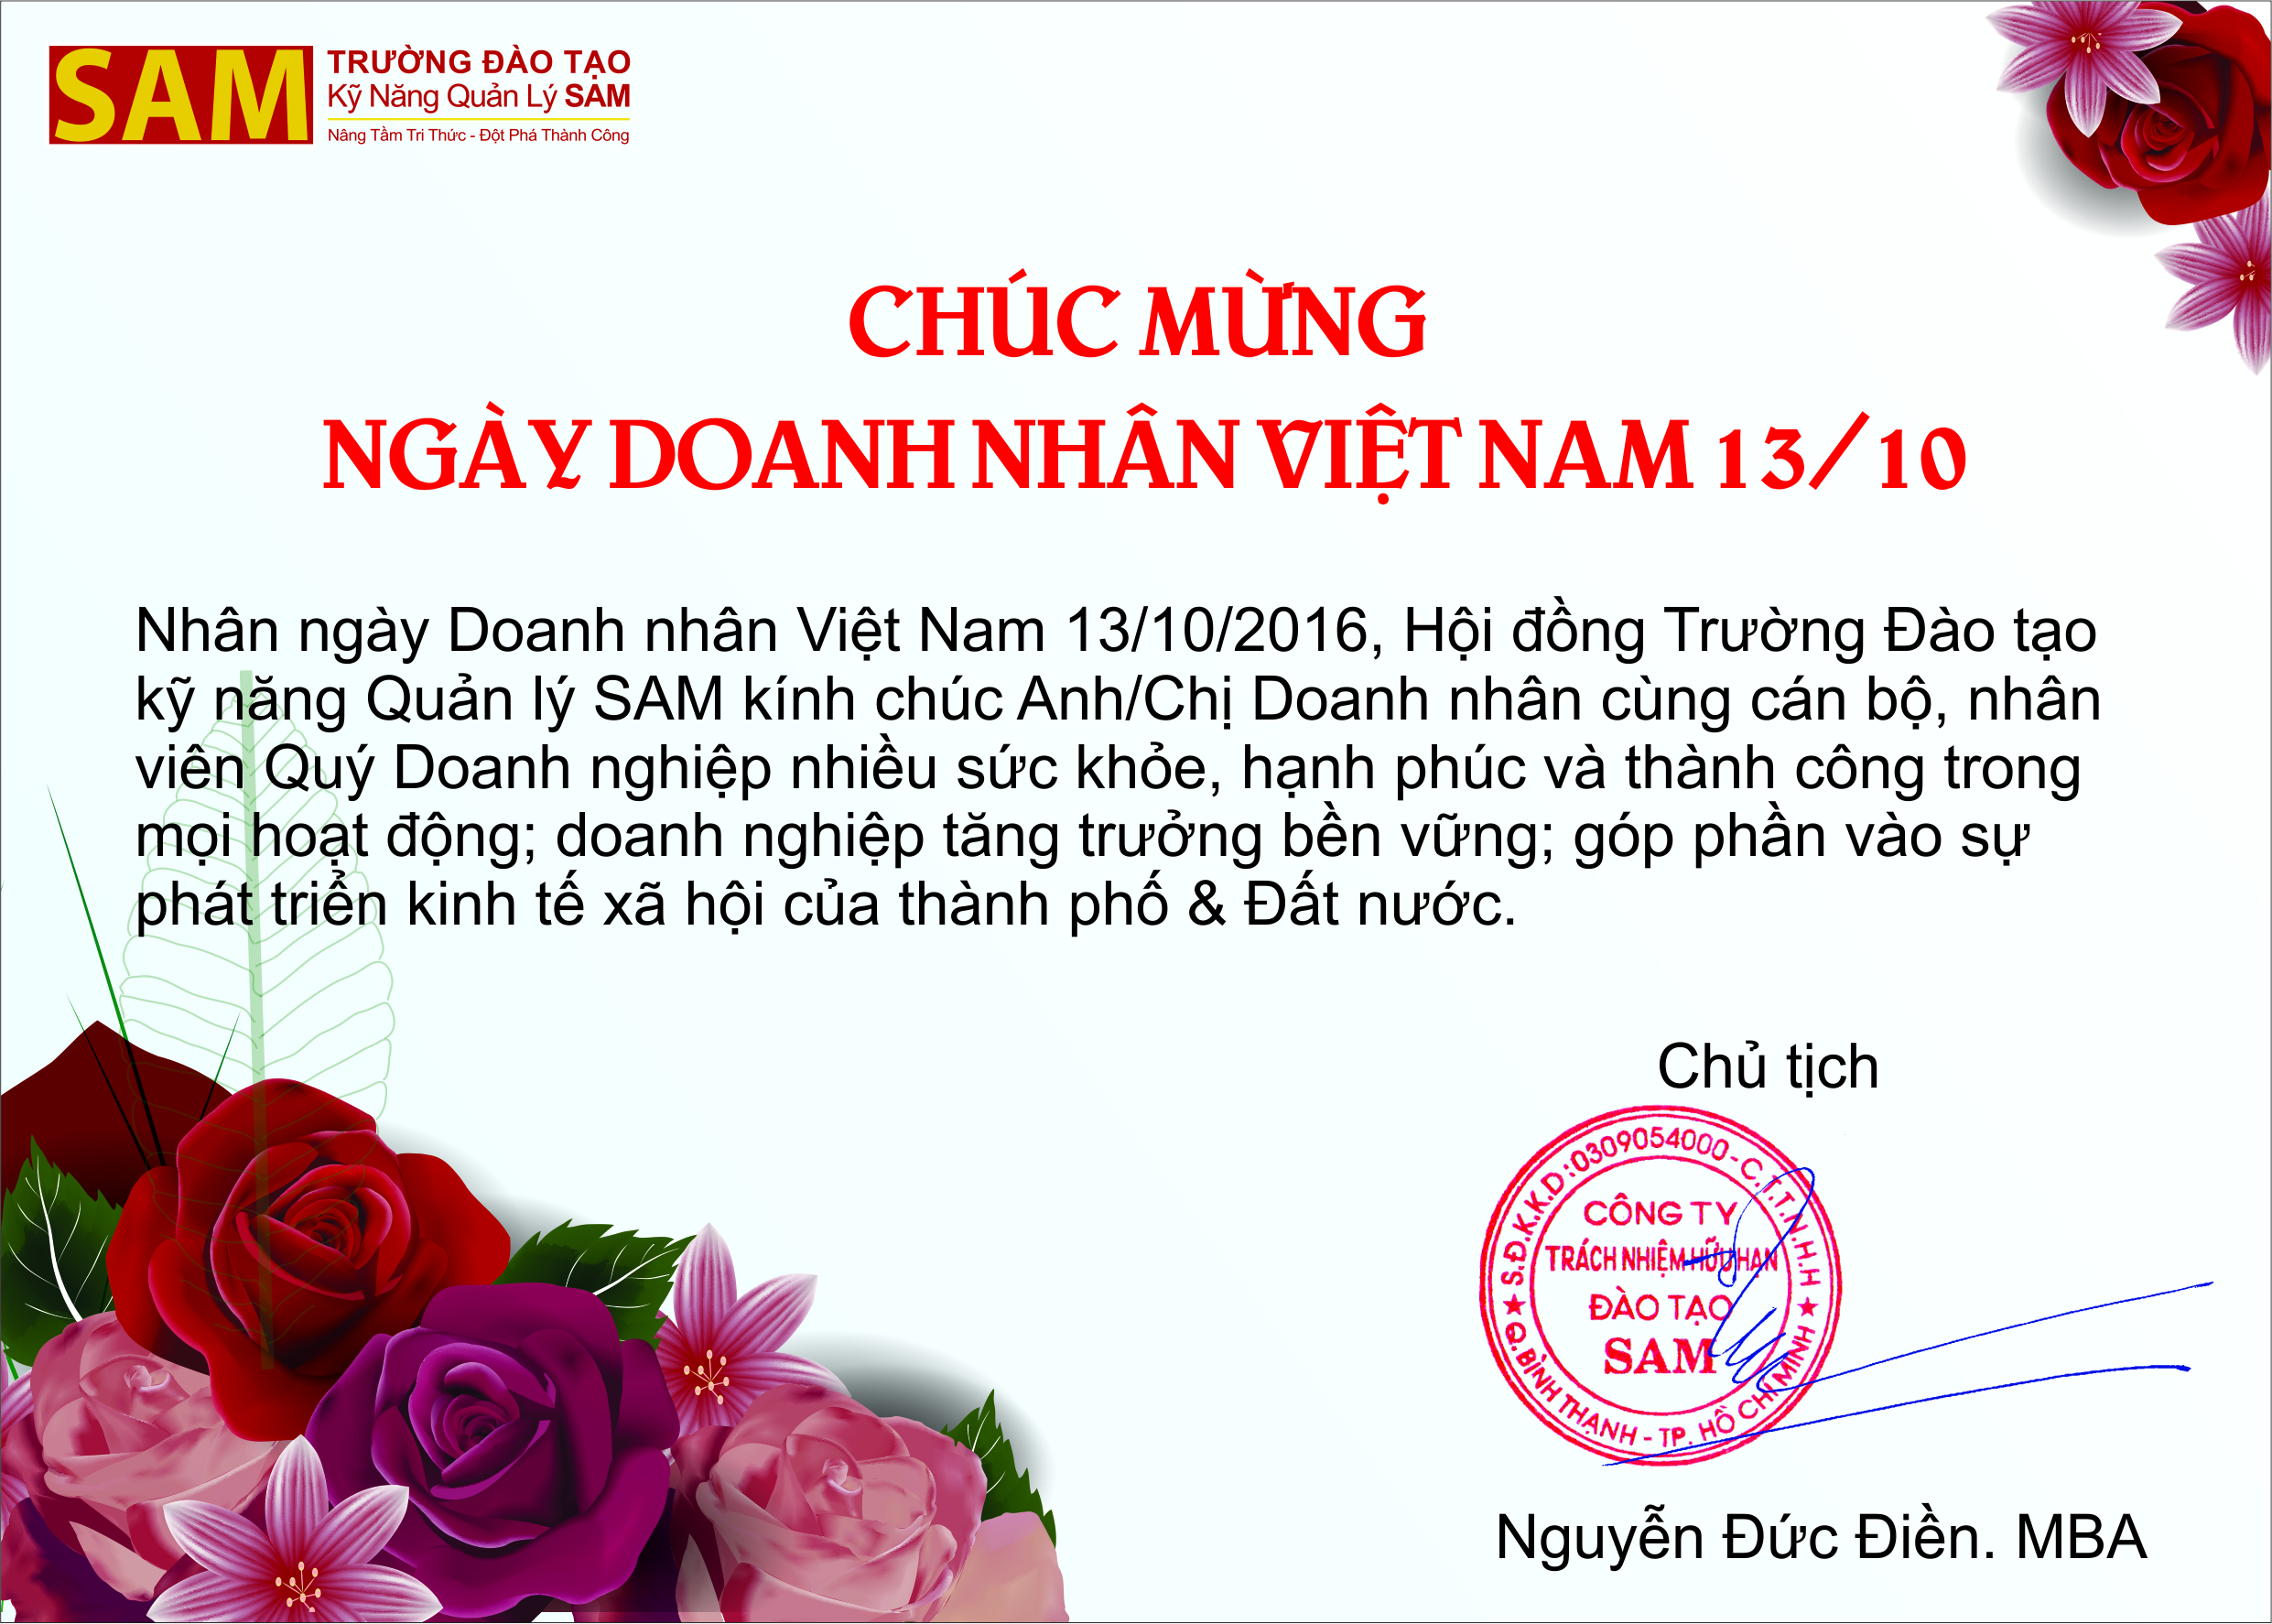 Chúc mừng ngày Doanh nhân Việt Nam 13/10/2016